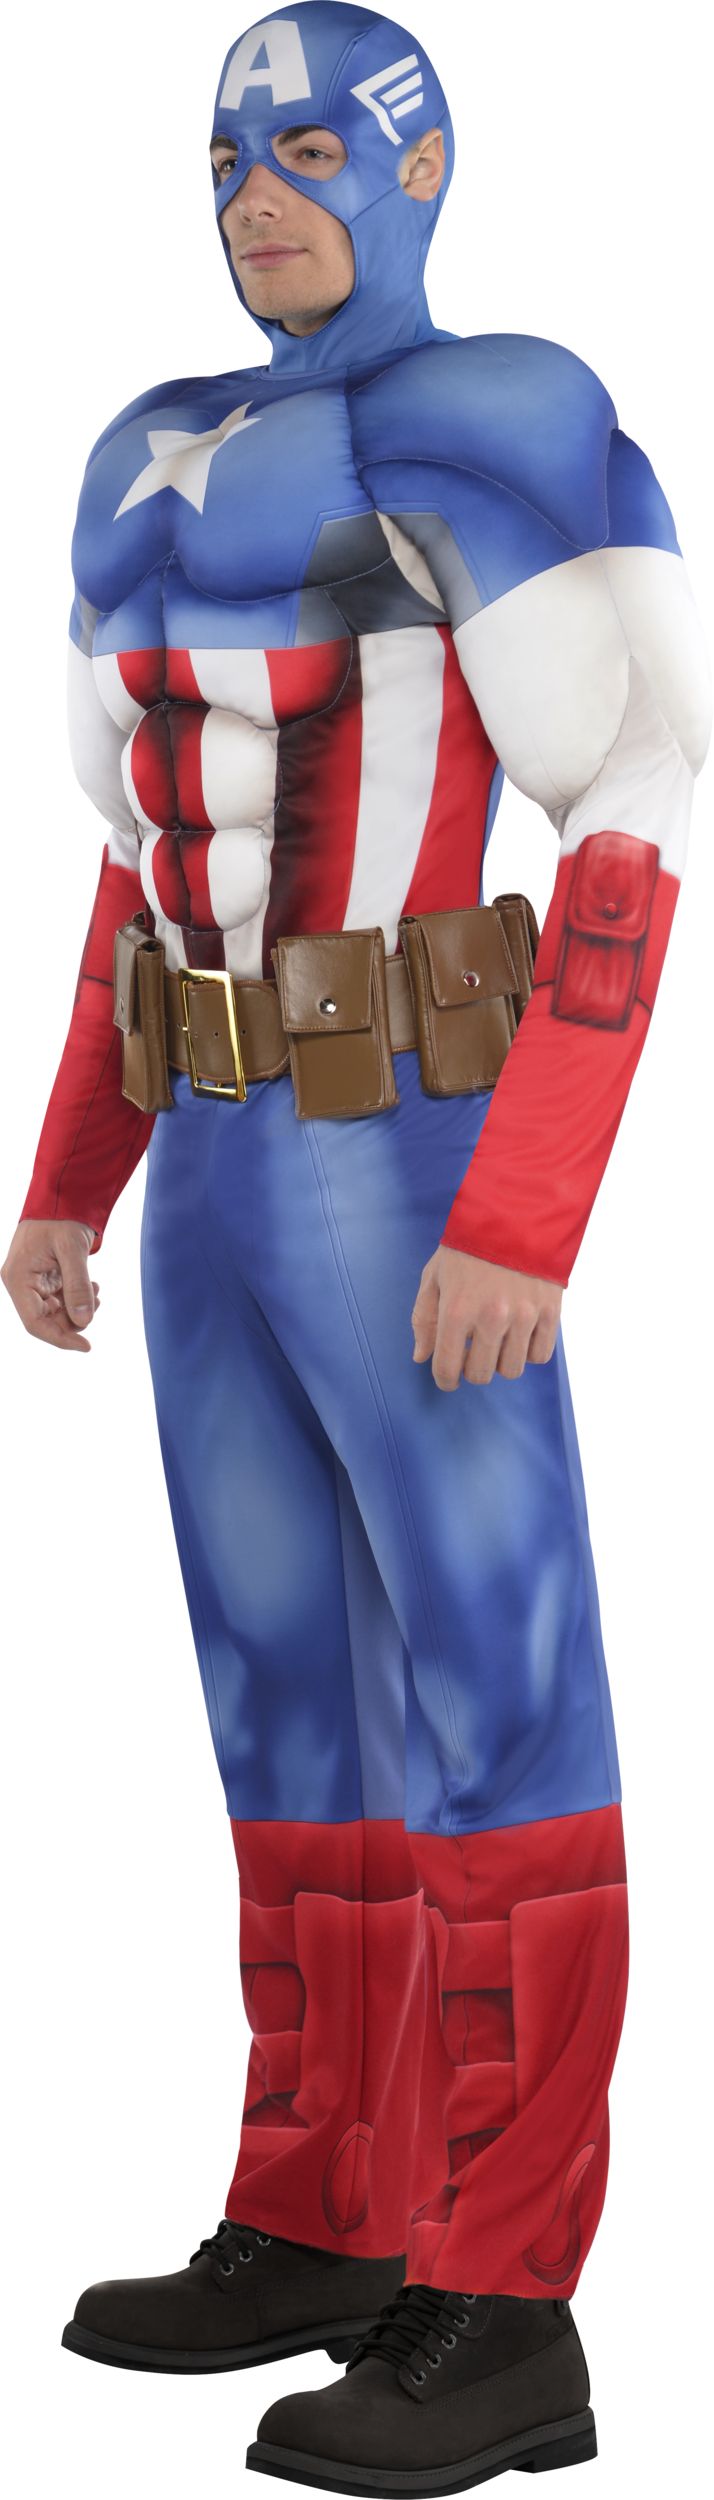 Costume Captain America Enfant Musclé - Partywinkel